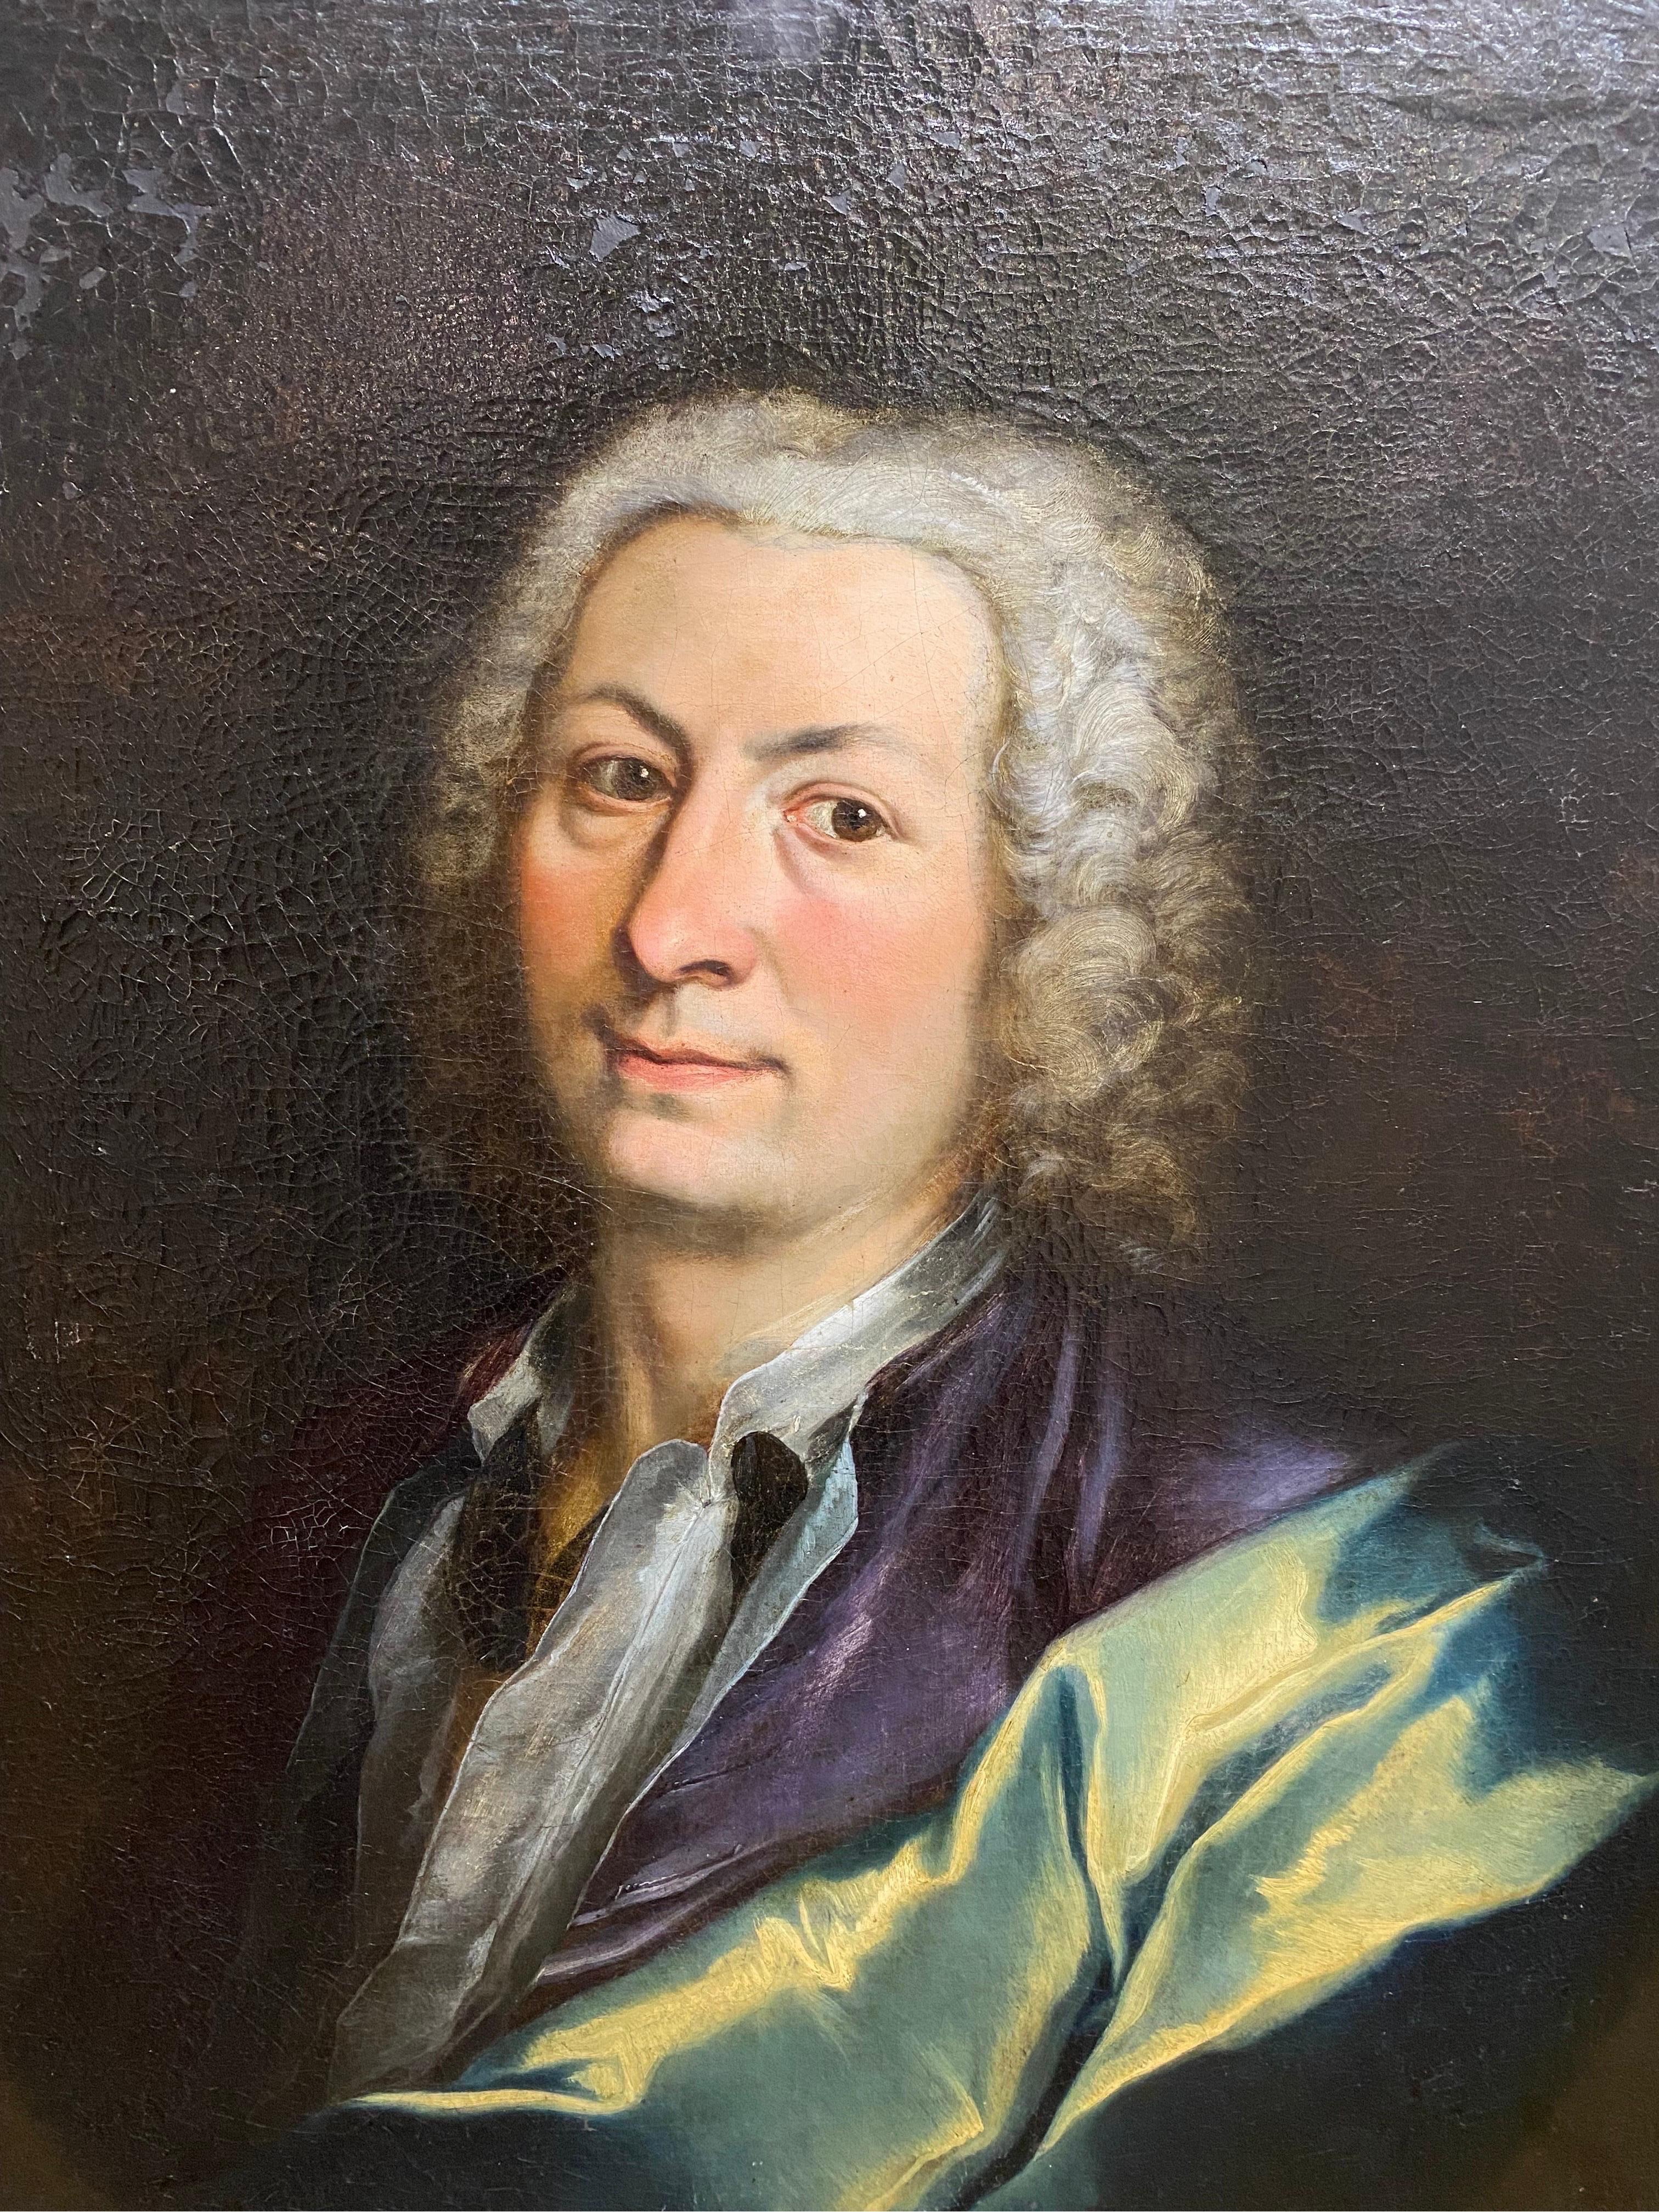 Portraits - Painting by Nicolas De Largilliere